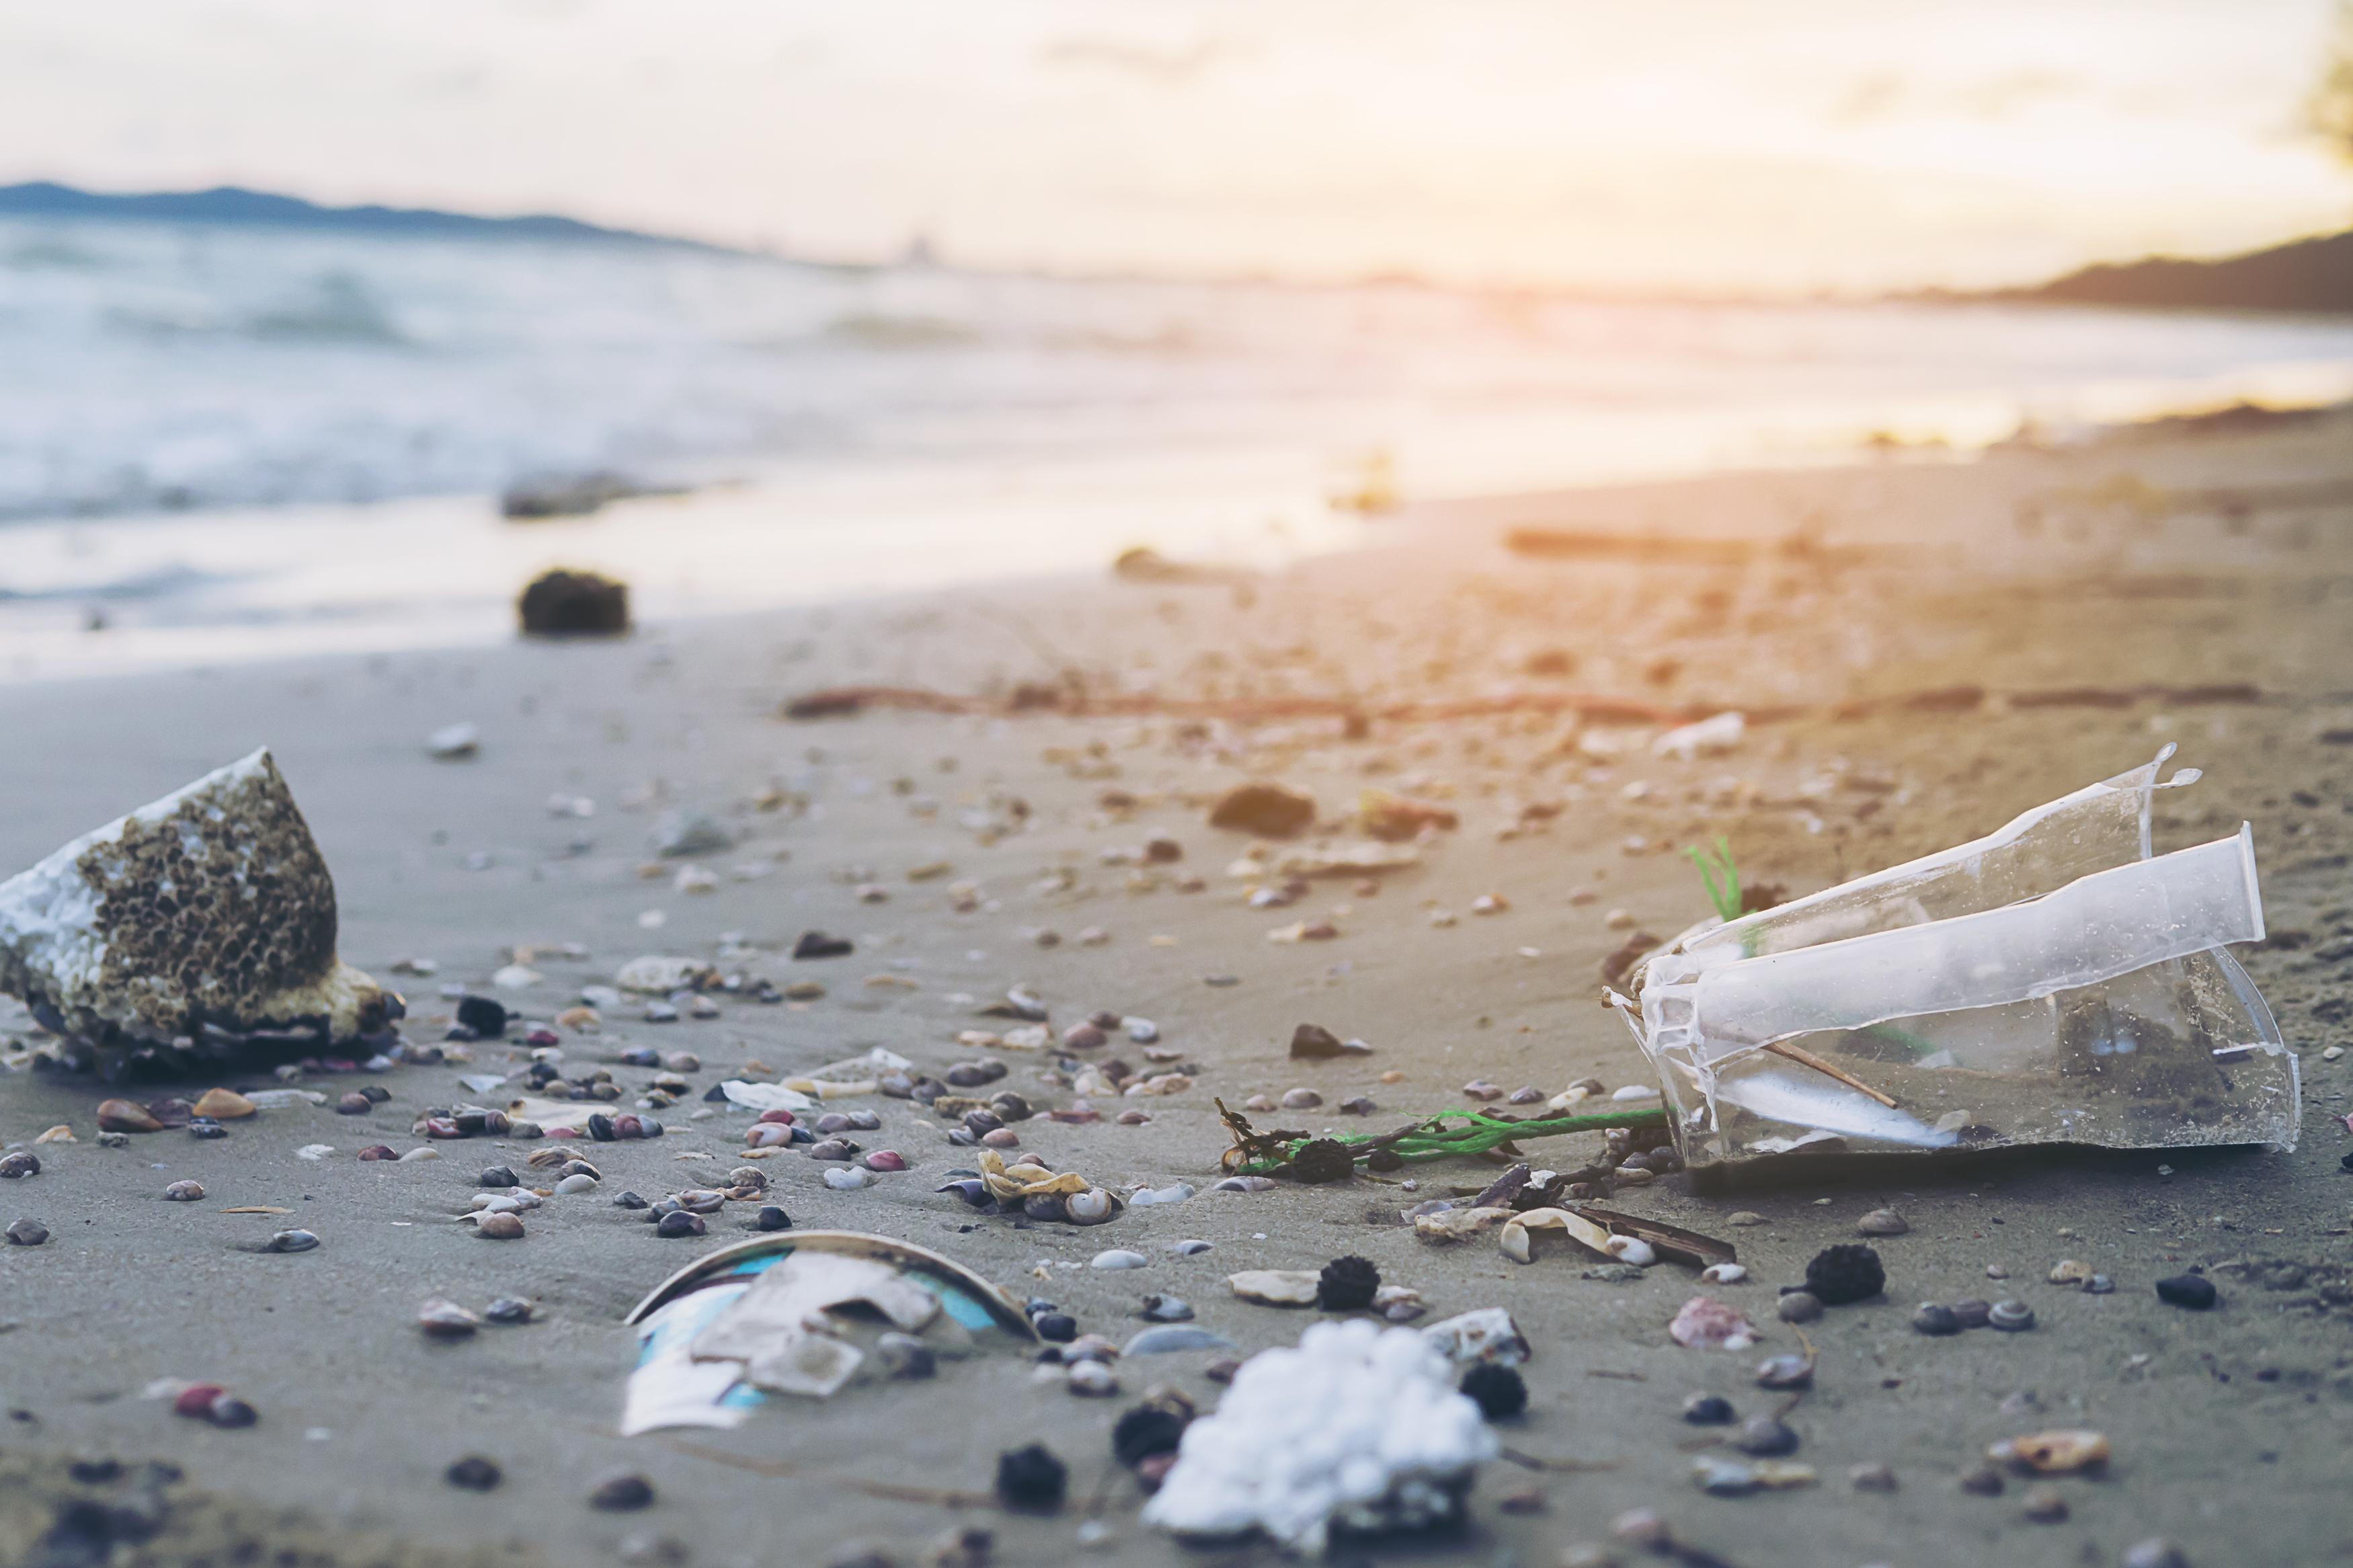 Un mar de plástico: 100.000 animales marinos mueren al año